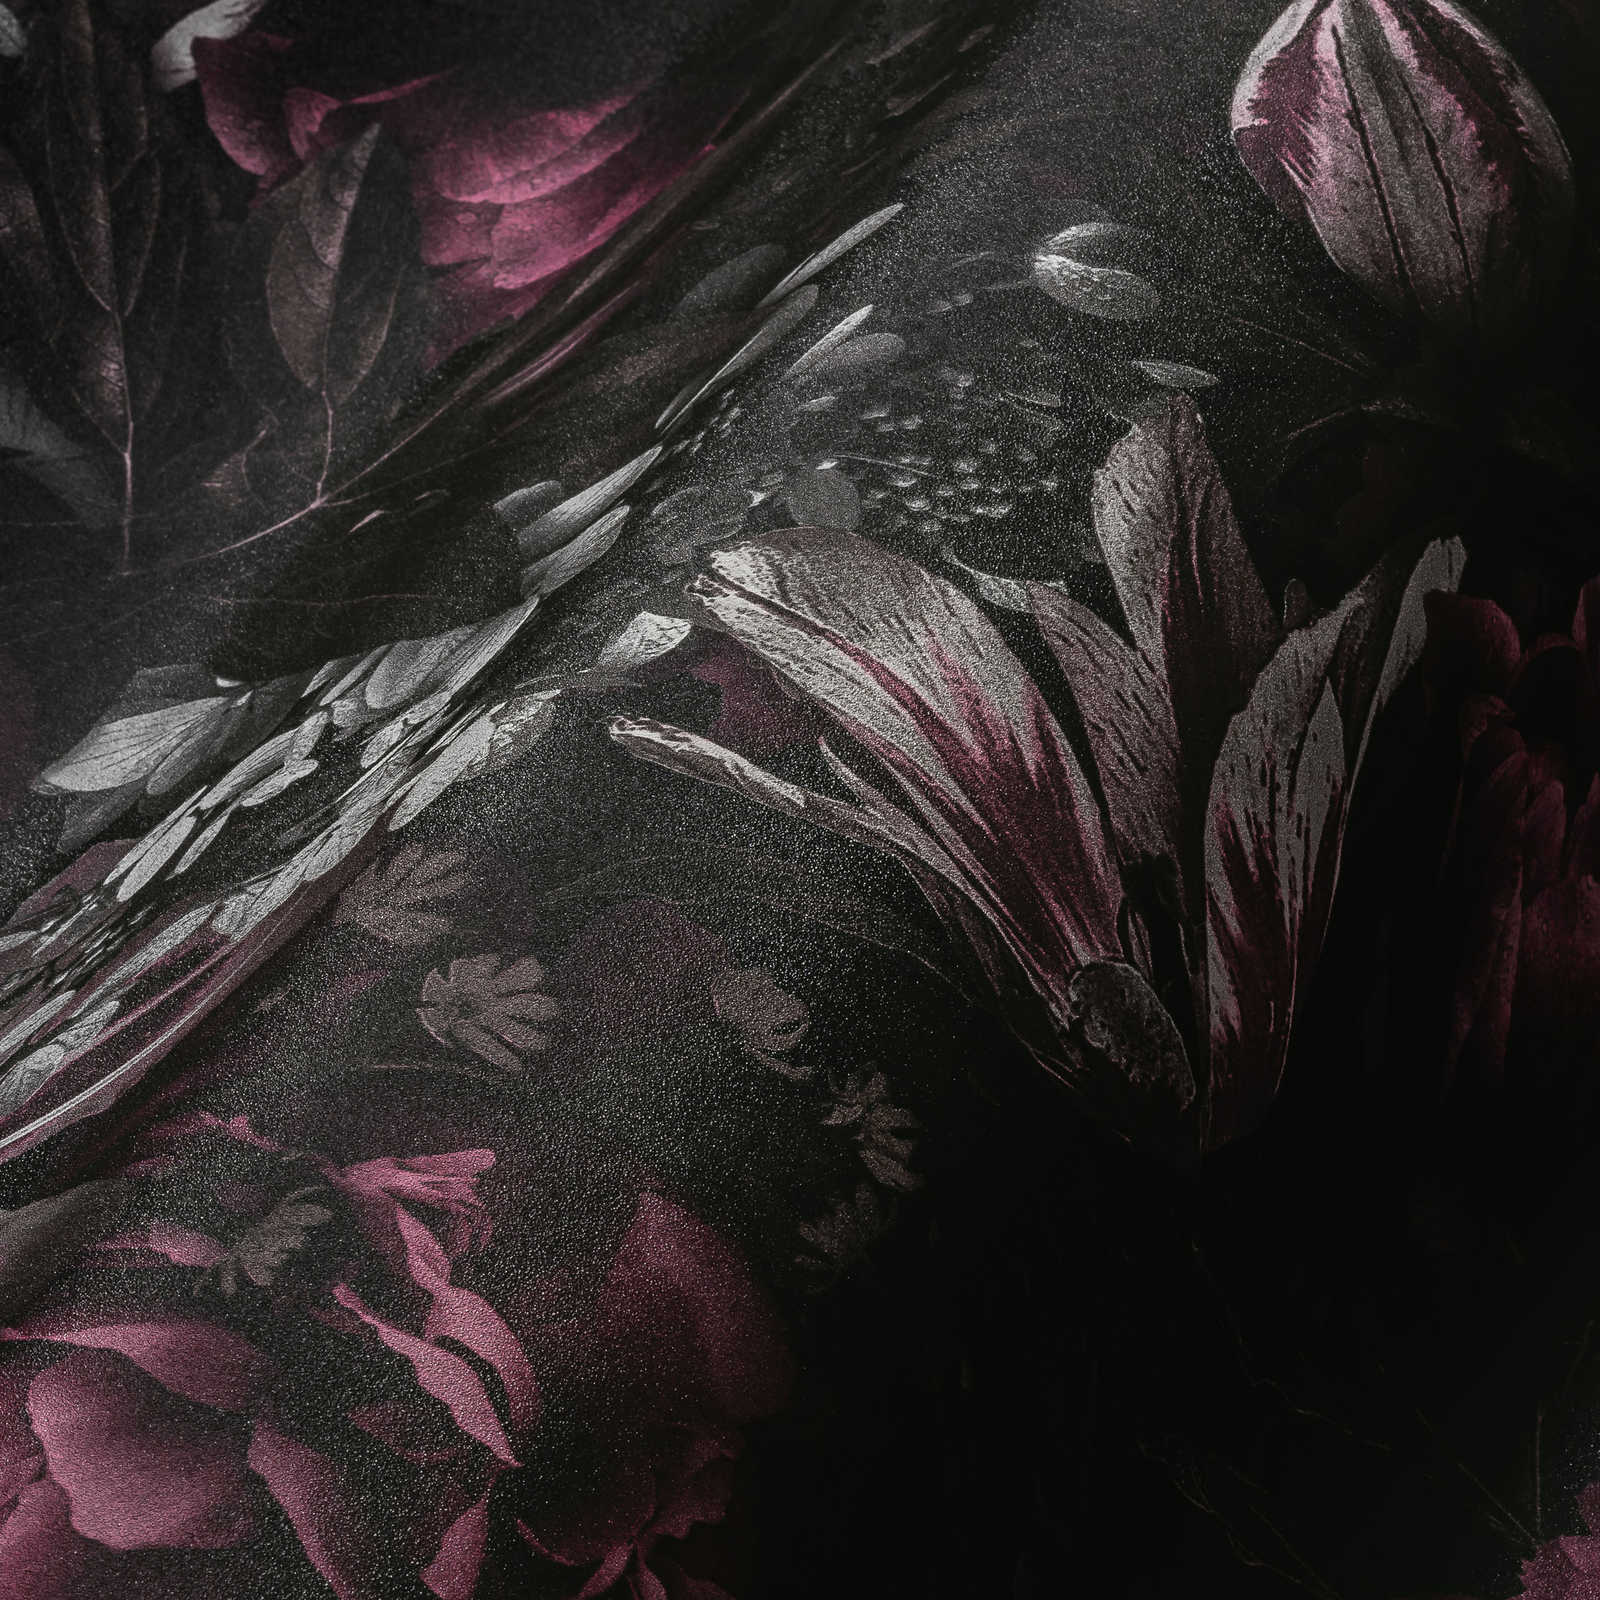             behang rozen & tulpen in klassieke stijl - roze, grijs
        